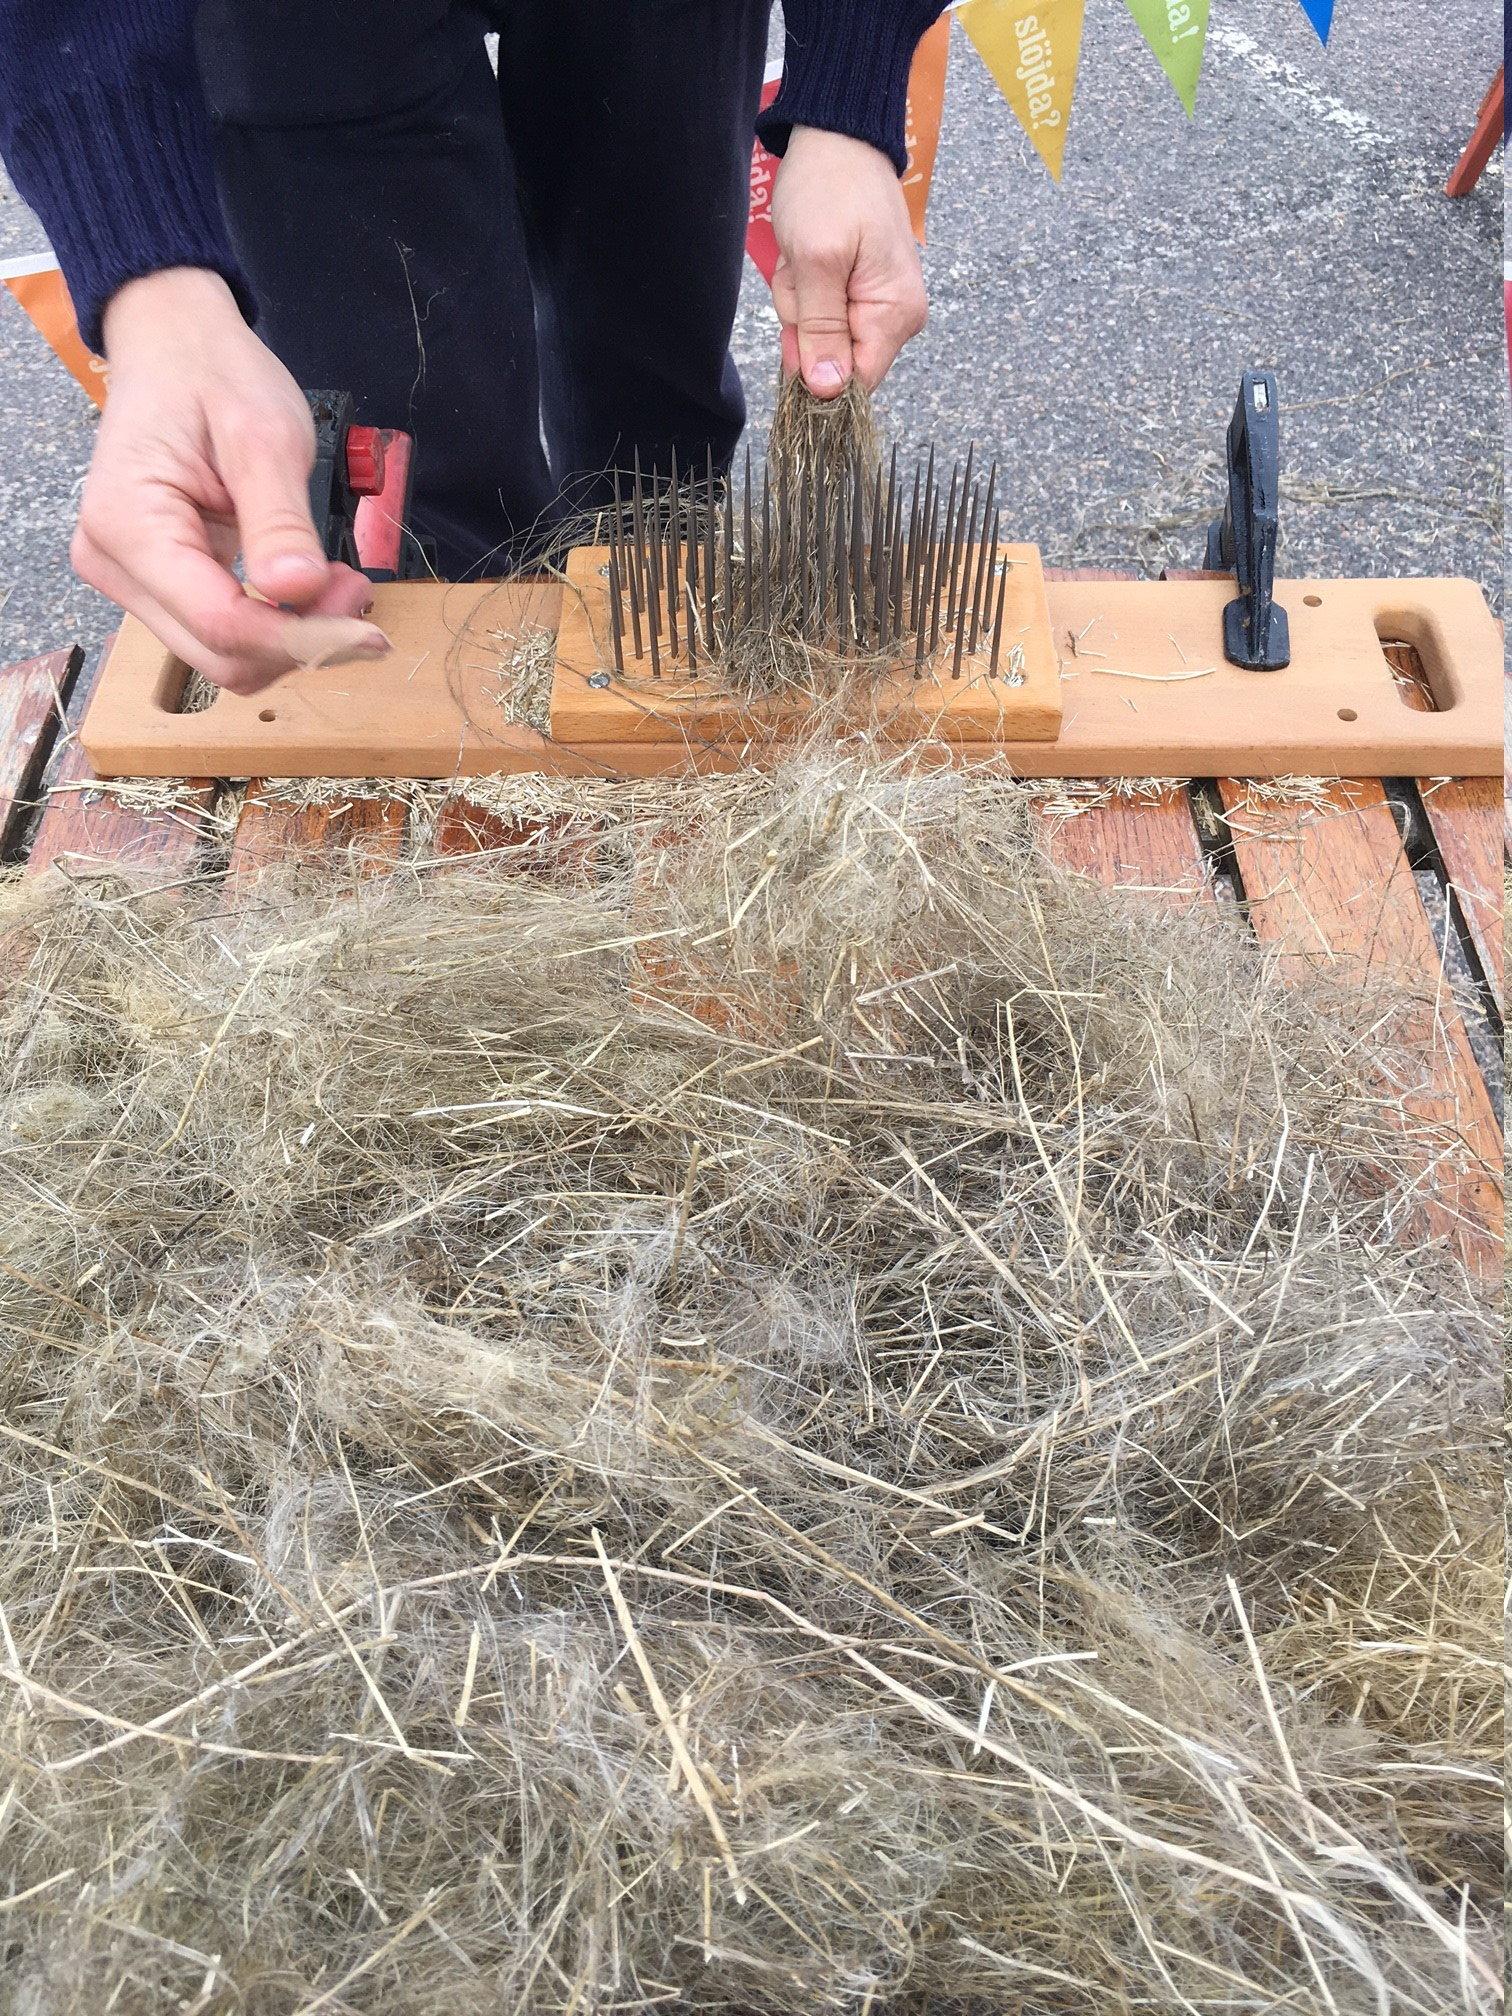 När man häcklar drar man linet genom en kam för att få fram fibrerna som sedan kan spinnas till garn.